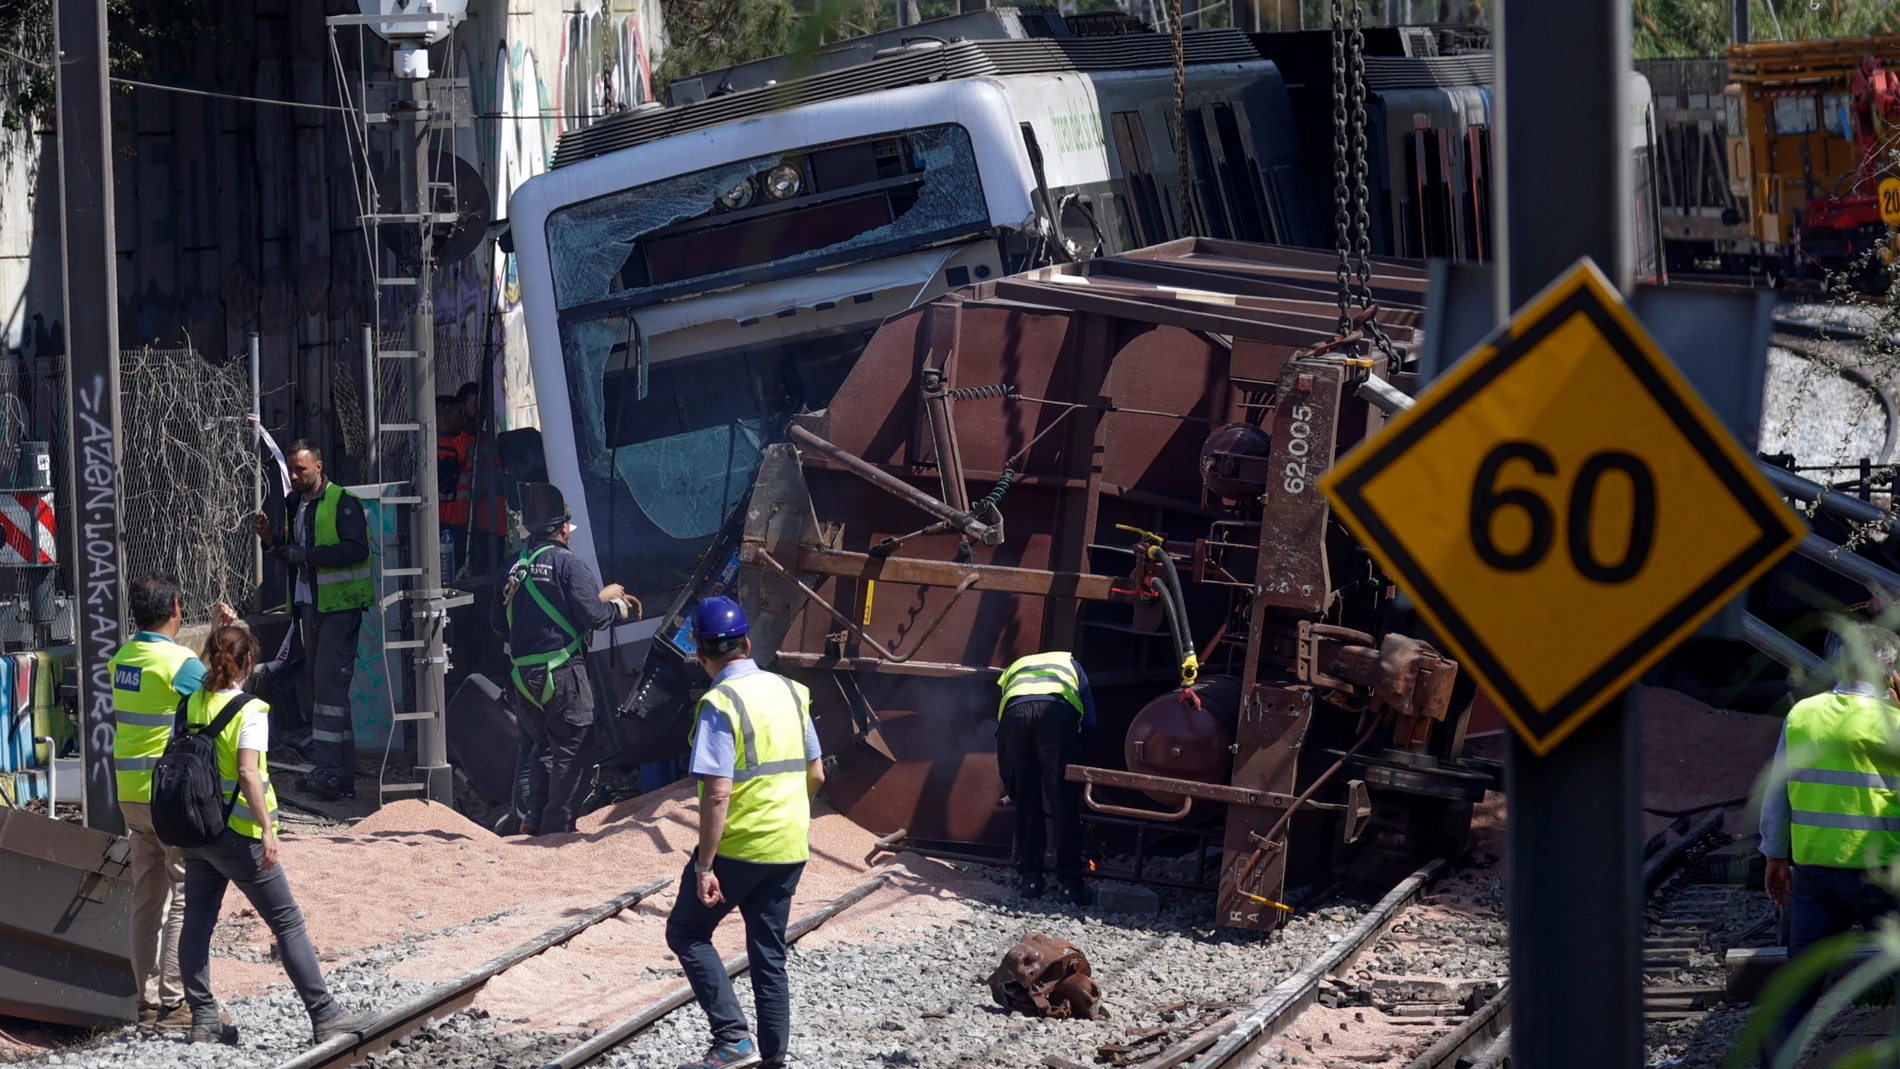 Técnicos y operarios en el lugar donde ayer se produjo un accidente ferroviario con un muerto y 86 heridos, todos ellos dados ya de alta, sobre el que el juzgado de guardia de Sant Boi de Llobregat ha abierto una investigación. EFE/Quique García